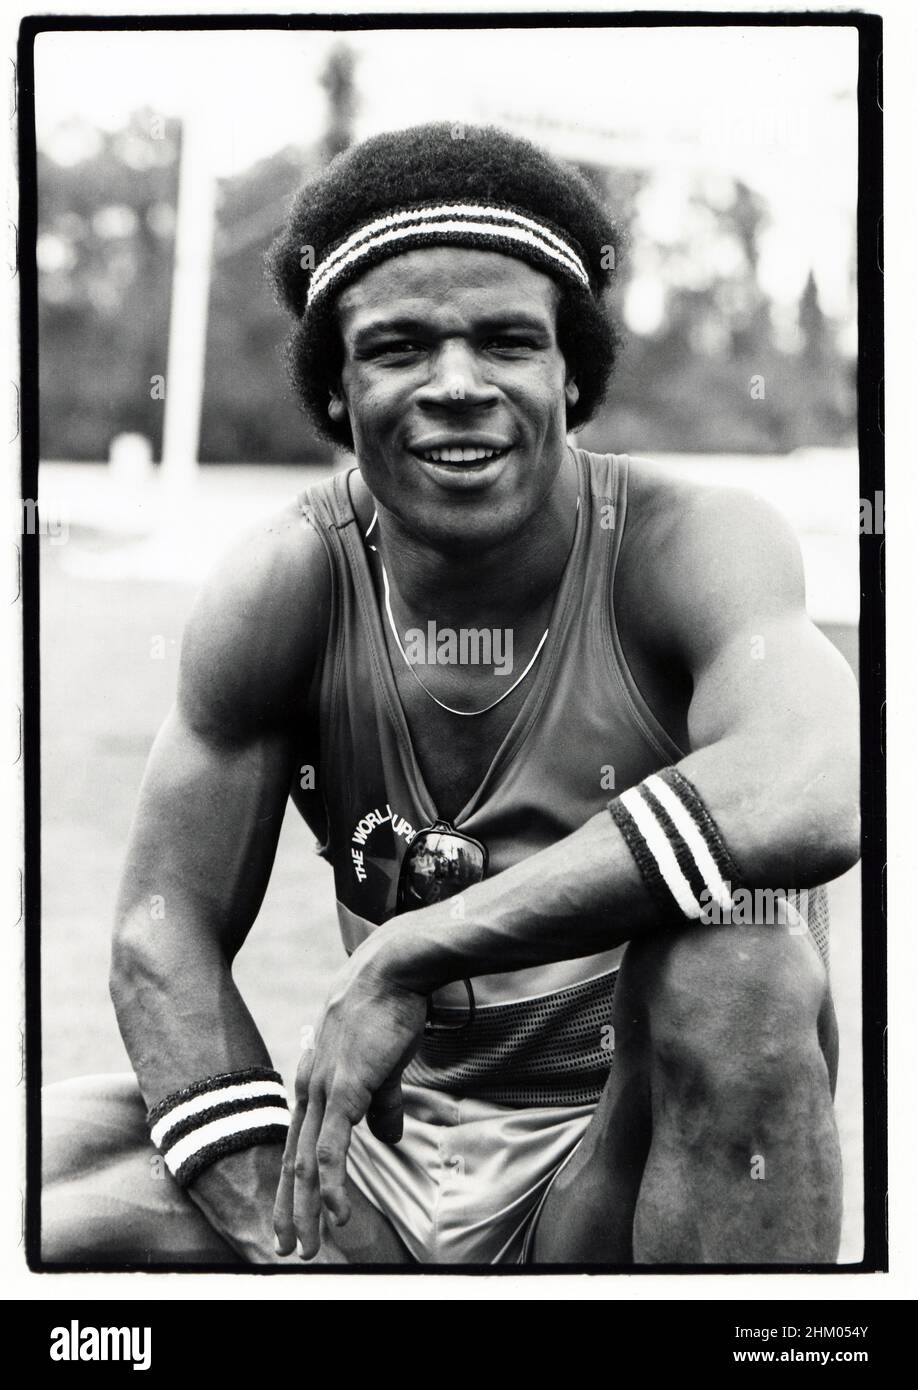 Porträt des Heisman-preisgekrönten Fußballspielers Charles White bei der Aufnahme der World Superstars-Fernsehshow 1980 in Lucaya, Bahamas. Er hat nicht gewonnen. Stockfoto